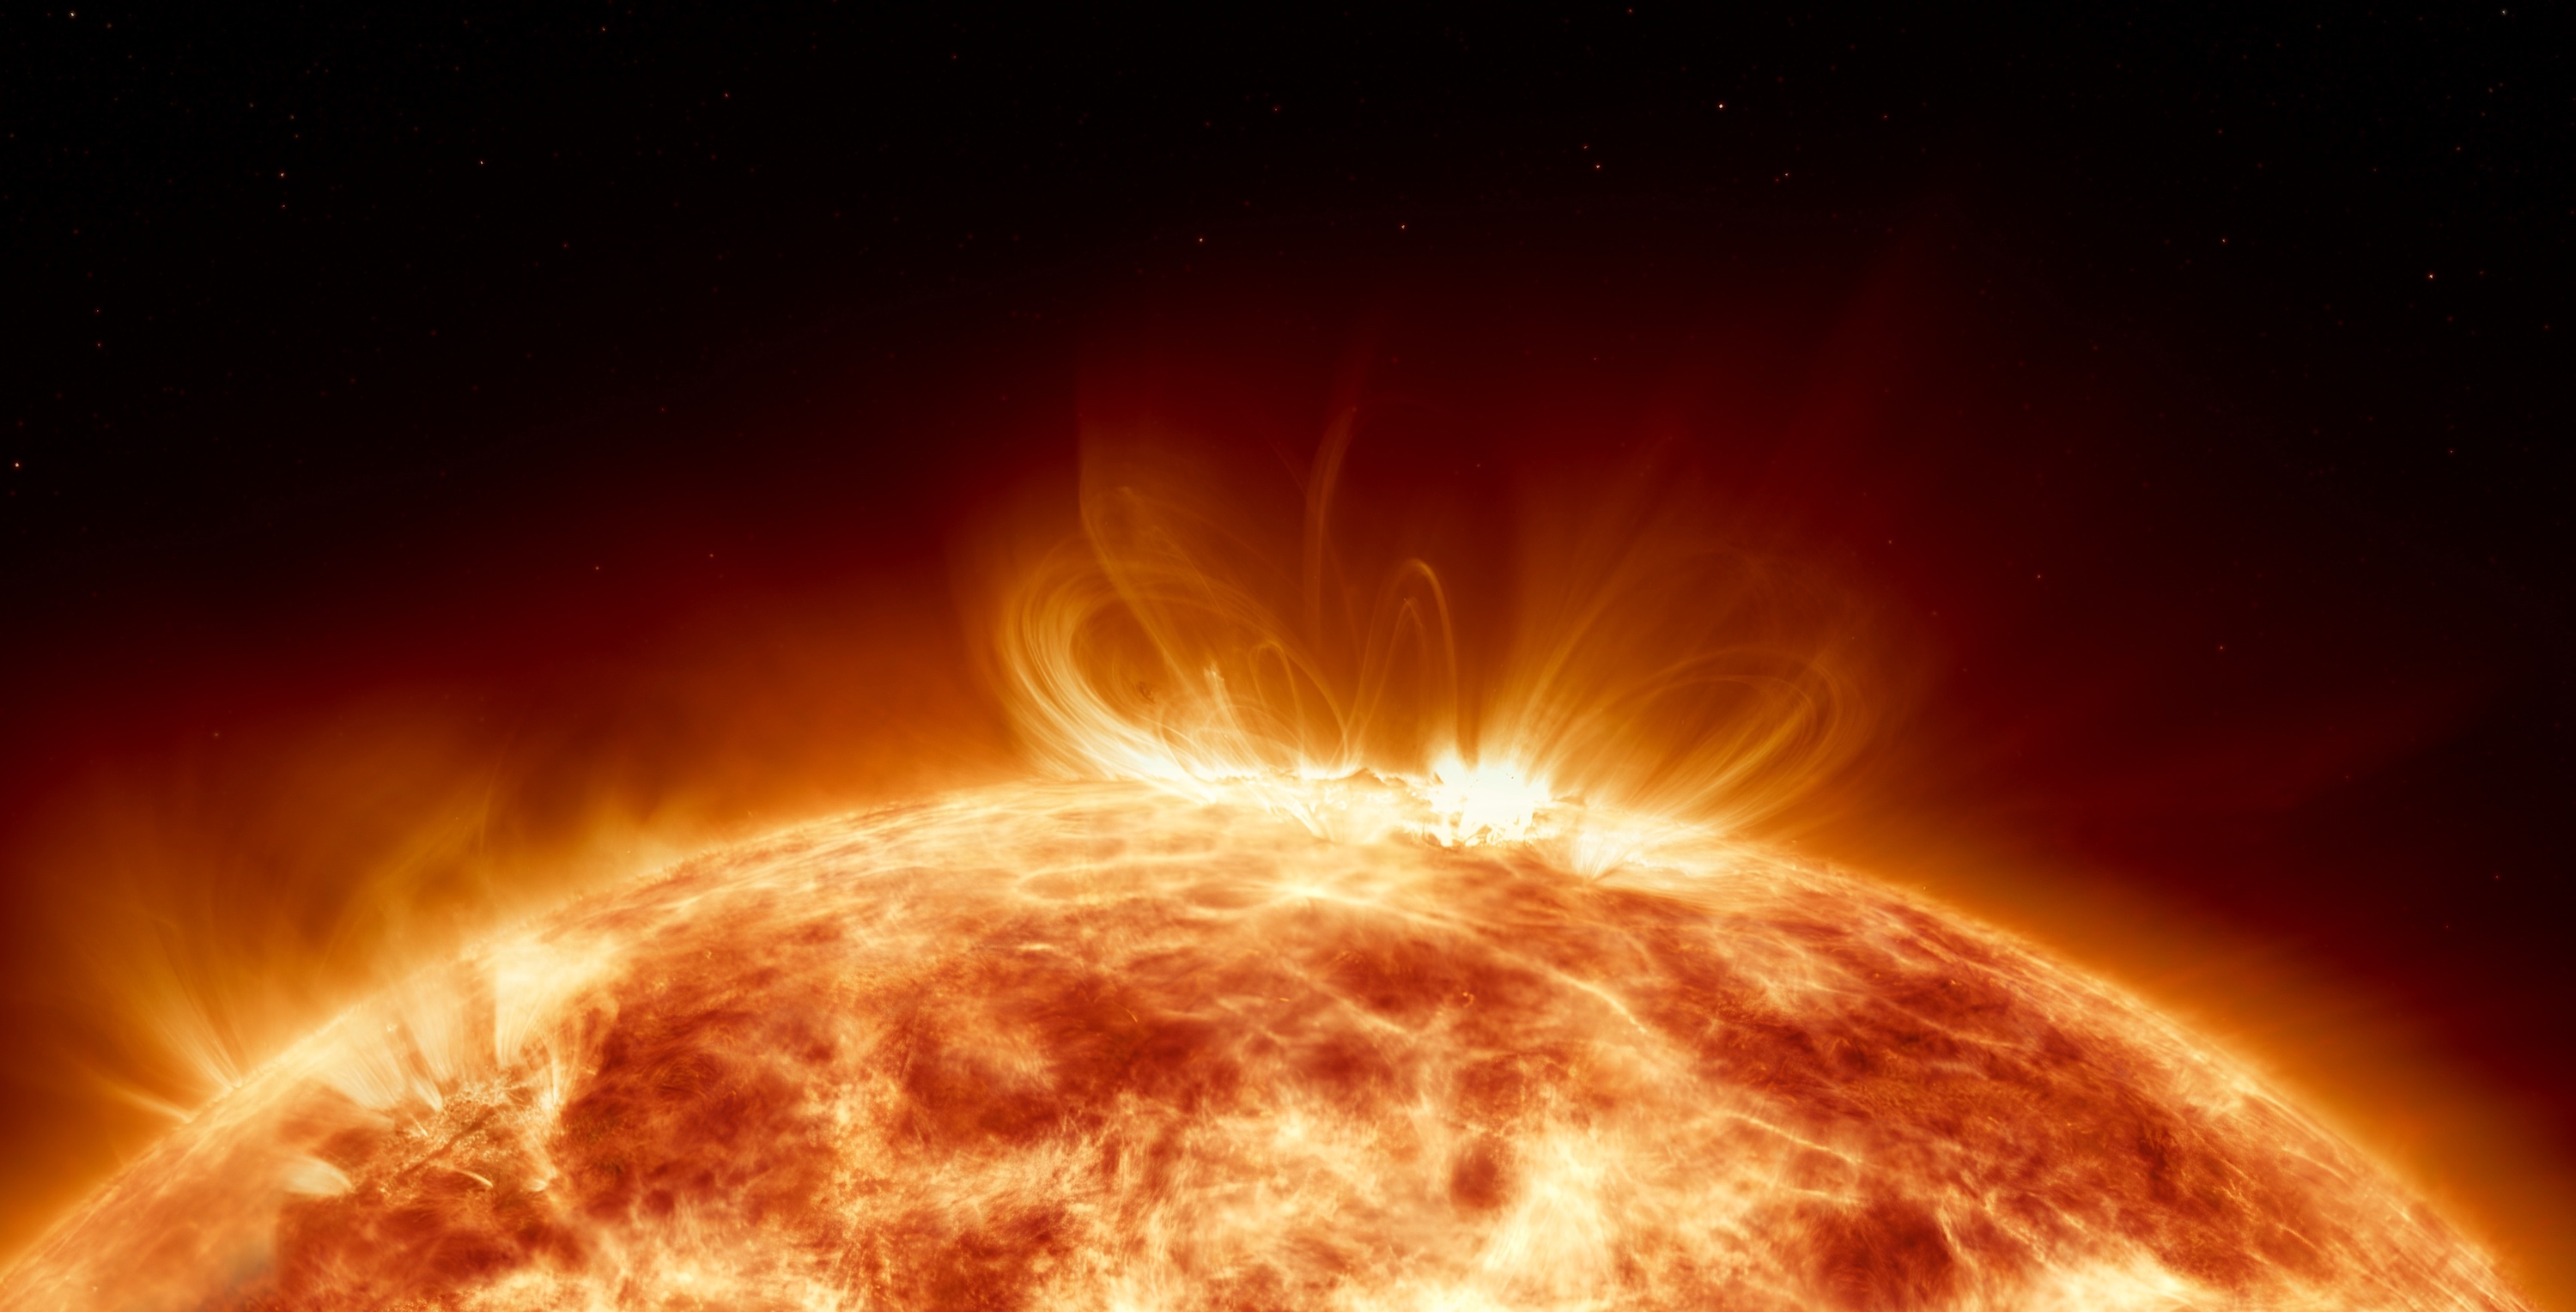 Le Soleil sera très bientôt étudié par Aditya, une sonde indienne censée décoller samedi. © remotevfx, Adobe Stock